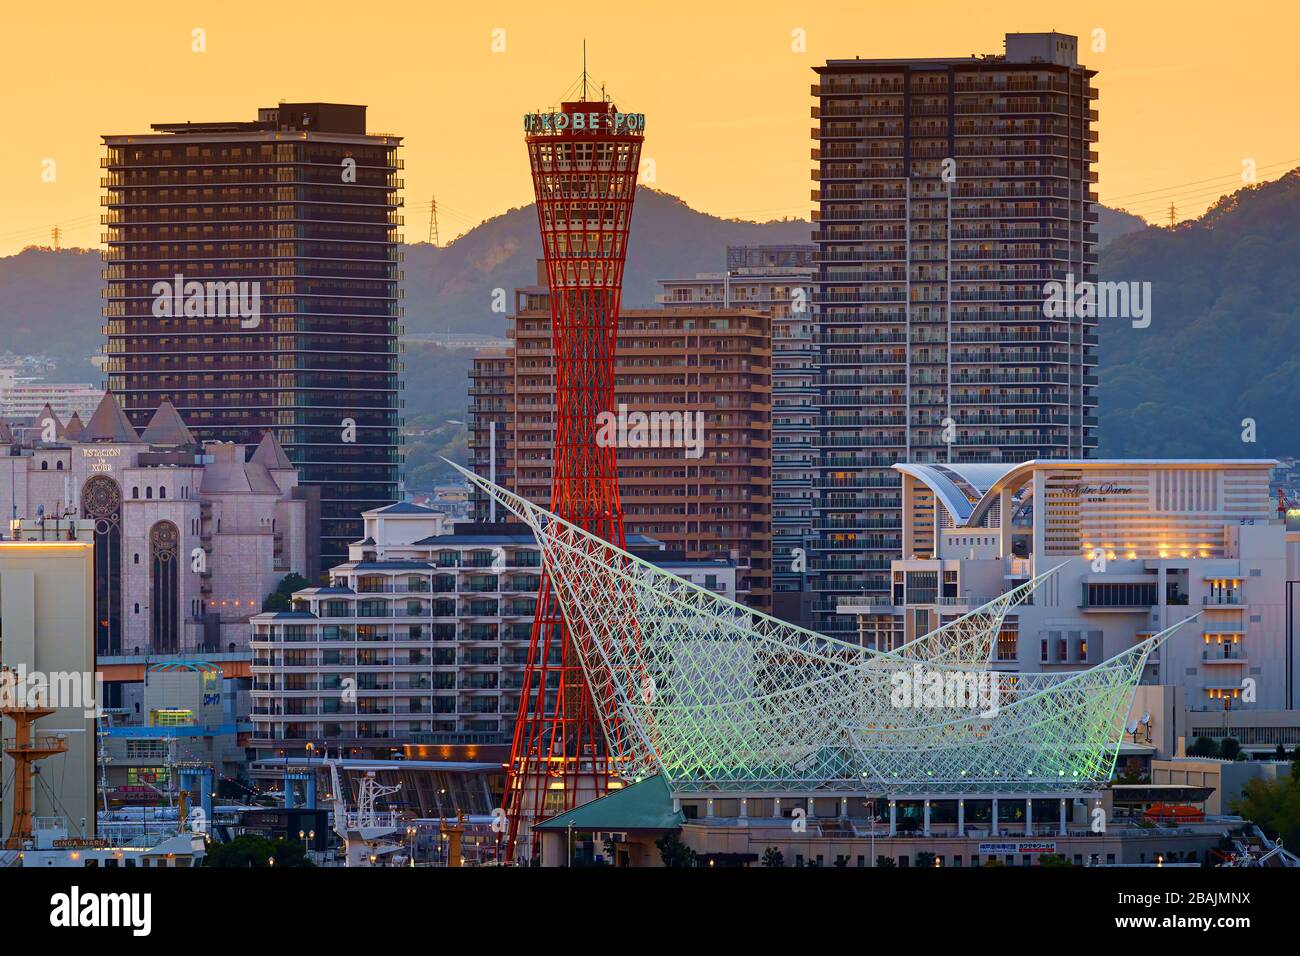 Kobe, Japon - 05 NOVEMBRE 2019 : vue aérienne de Kobe Port Tower au crépuscule Banque D'Images